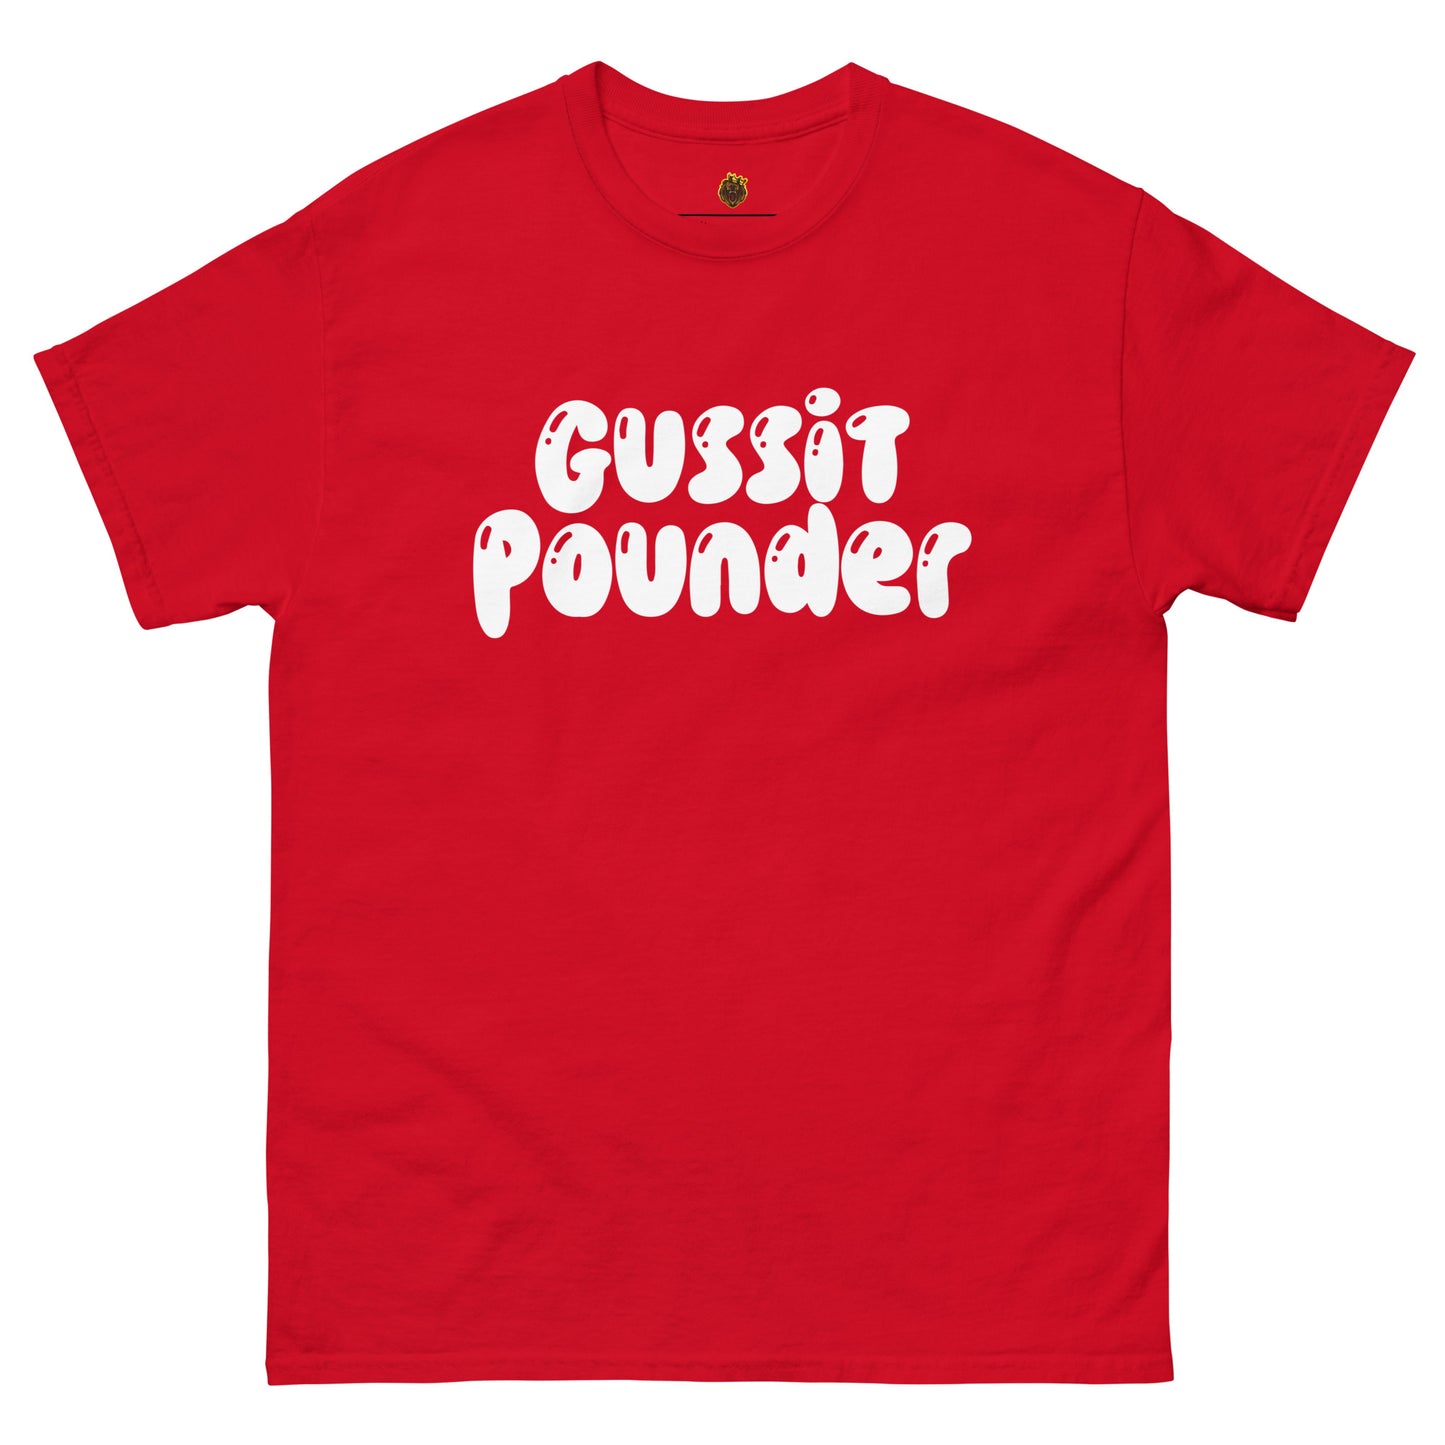 Gussit Pounder